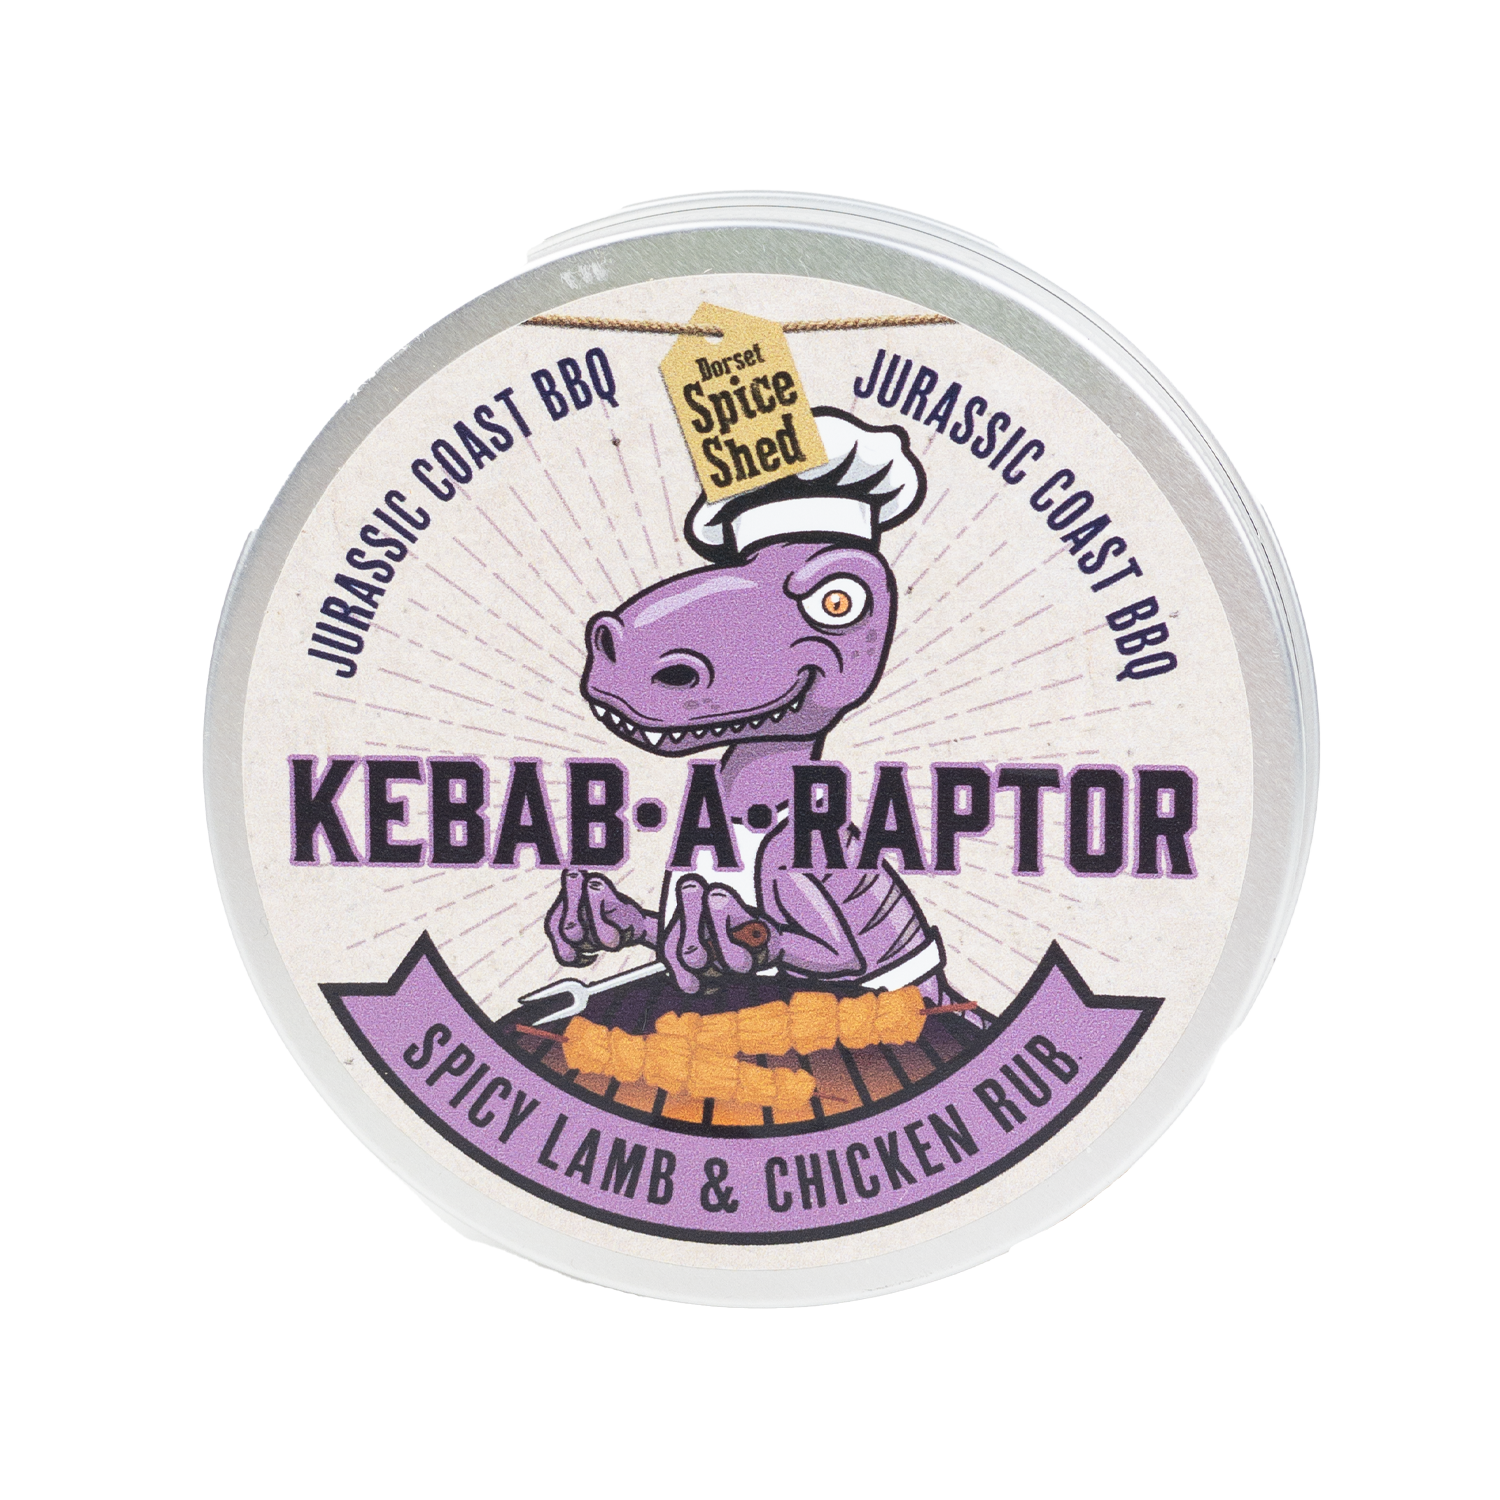 Jurassic BBQ Kebab-a-Raptor BBQ Lamb & Chicken Rub